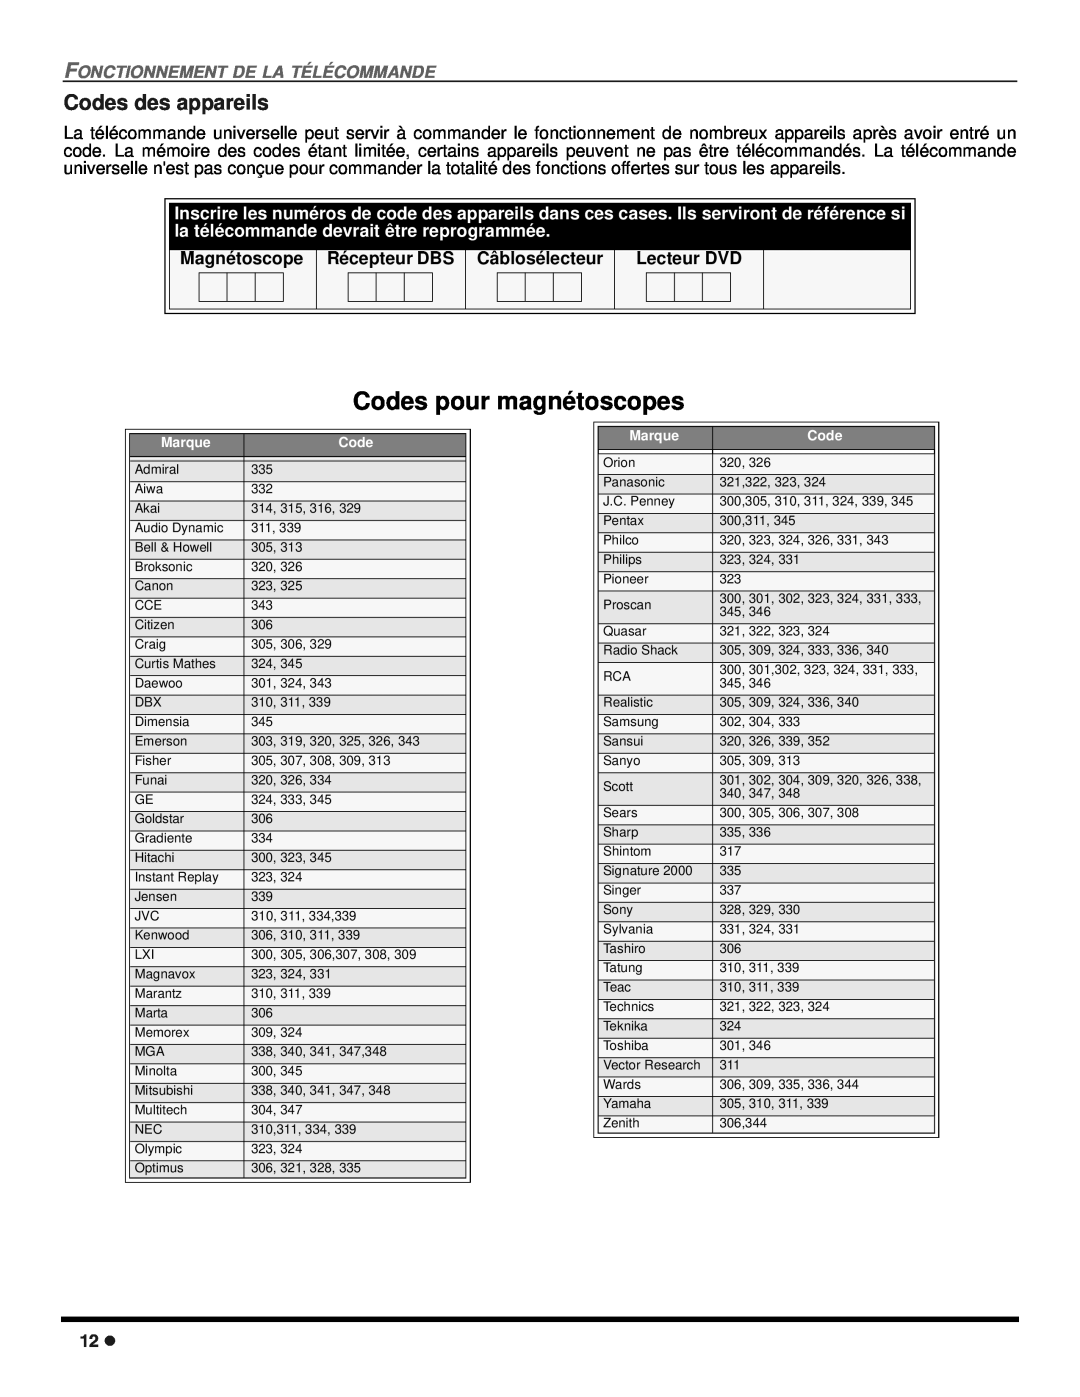 Panasonic CT 27SX12 Codes pour magnétoscopes, Fonctionnement De La Télécommande, Magnétoscope, Récepteur DBS, Lecteur DVD 